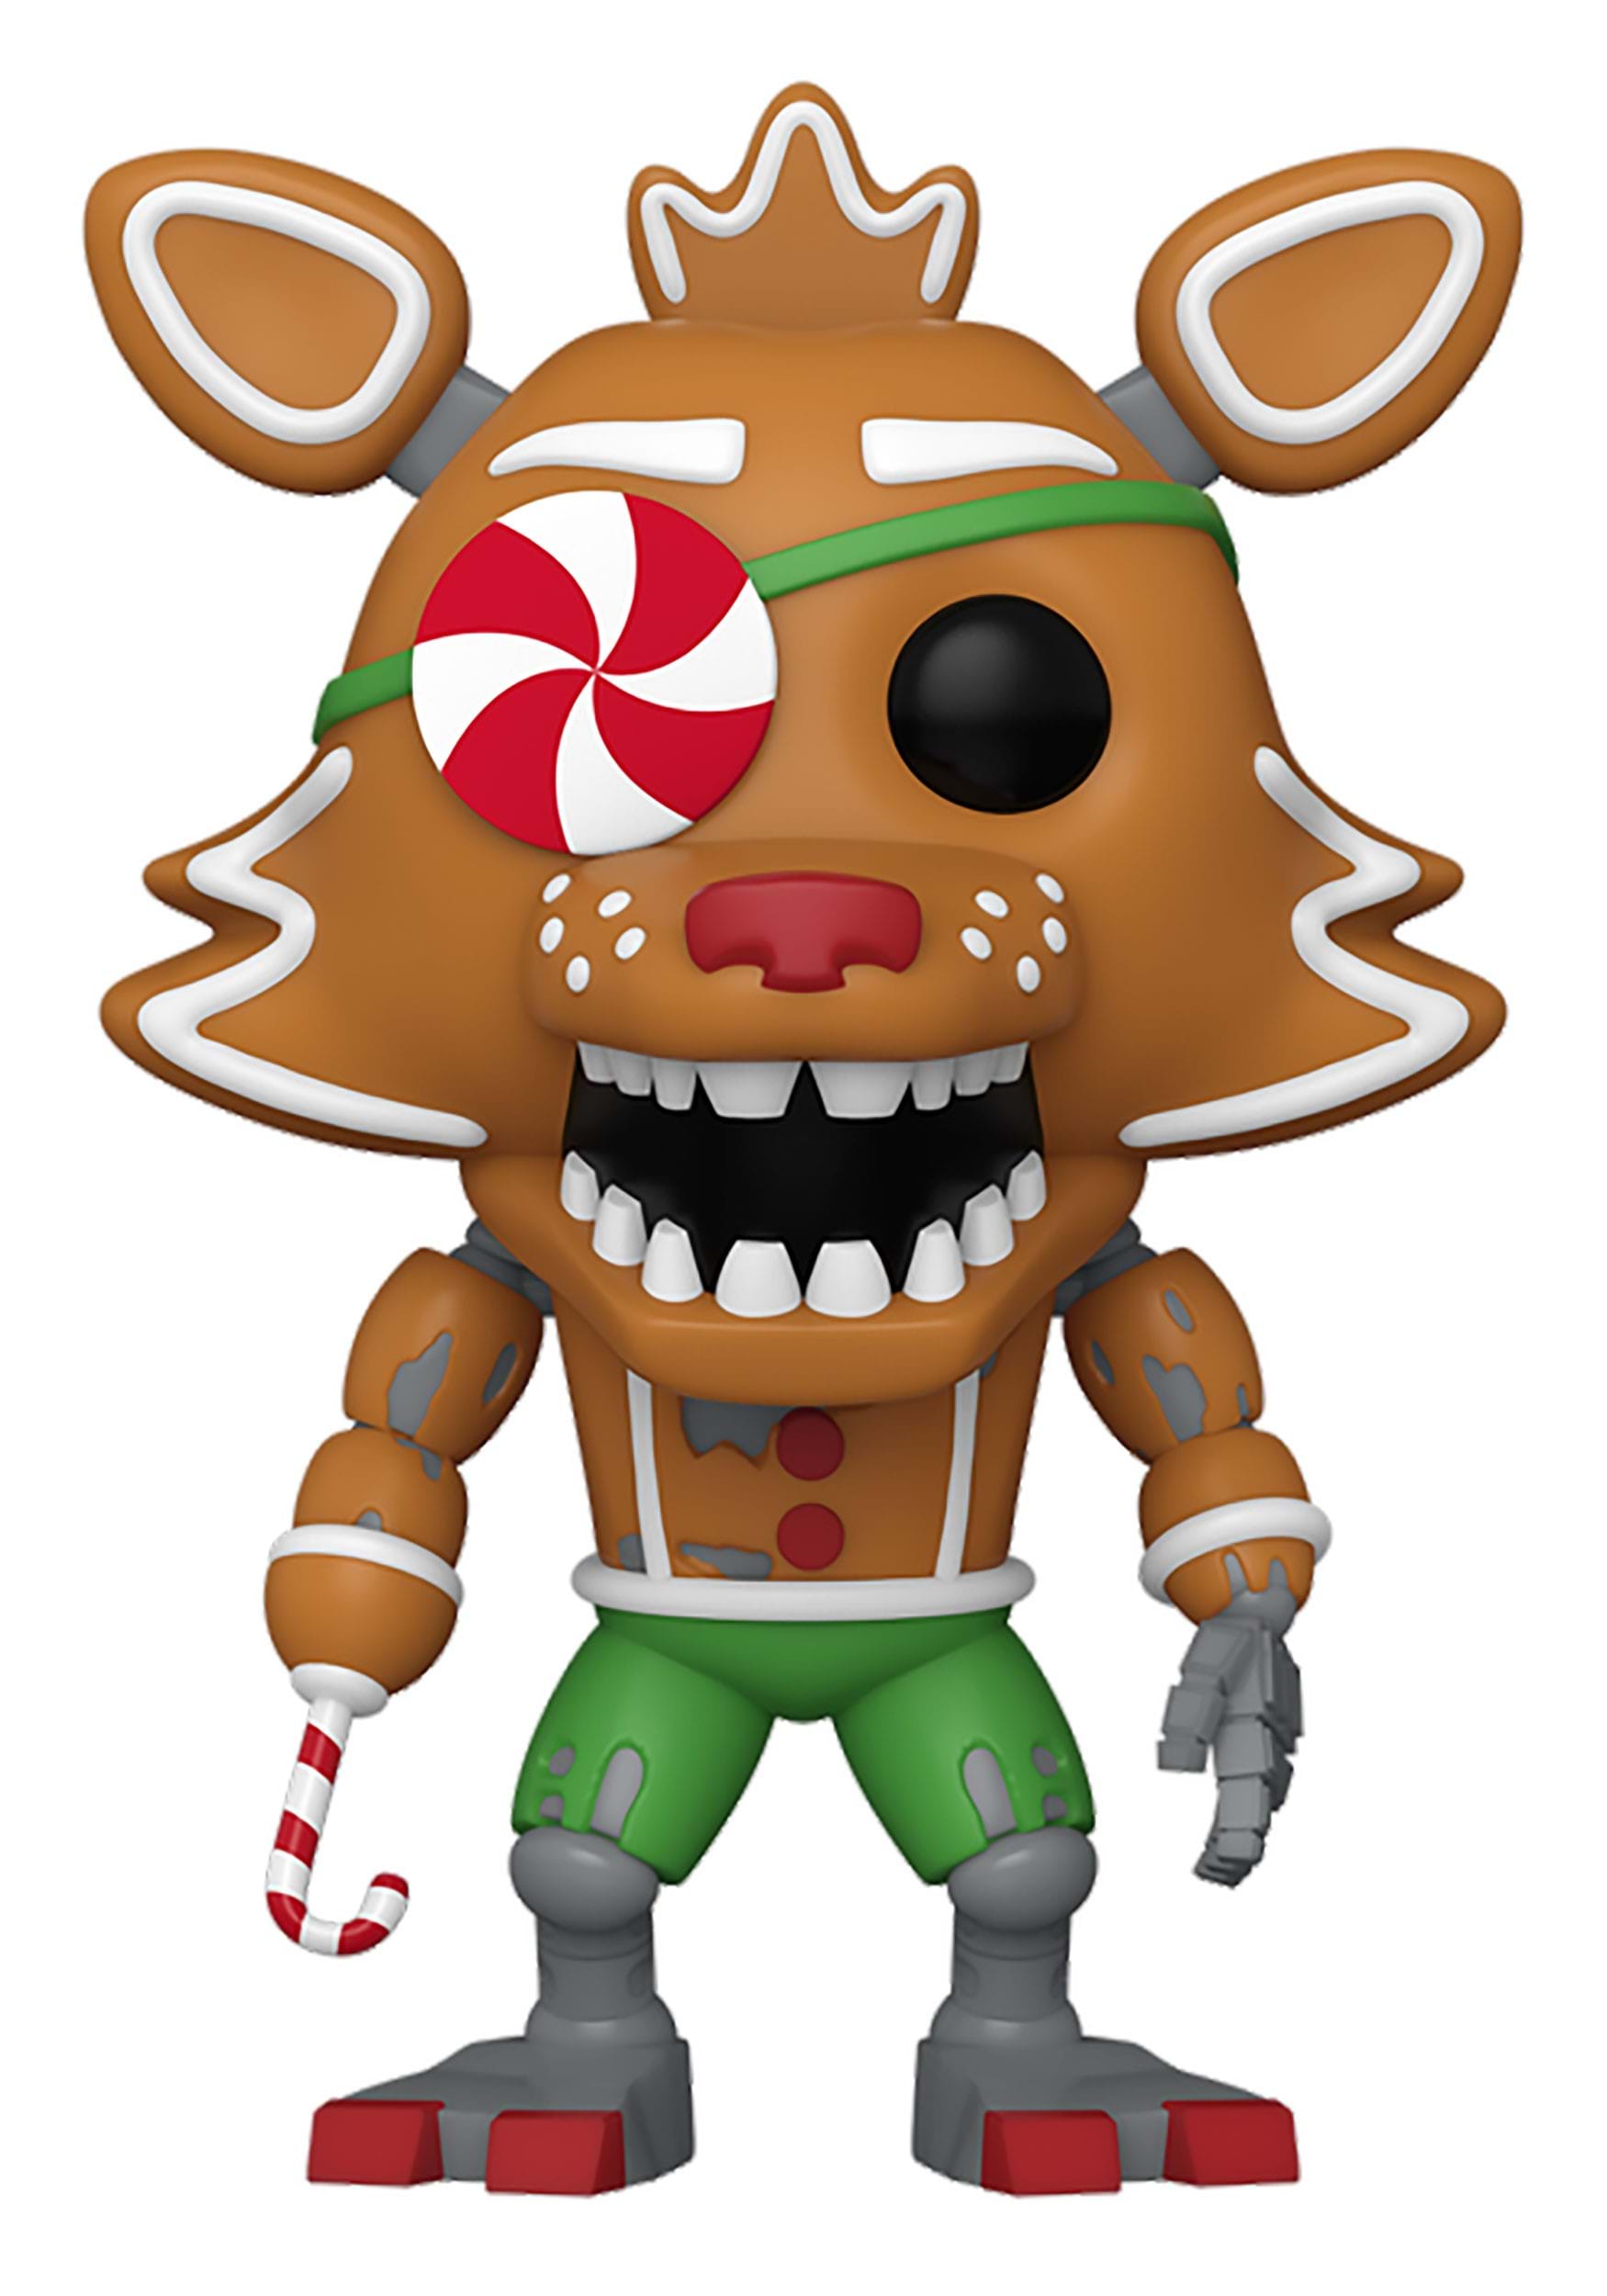 Pop! Games: Five Nights at Freddy's - Santa Freddy Fazbear